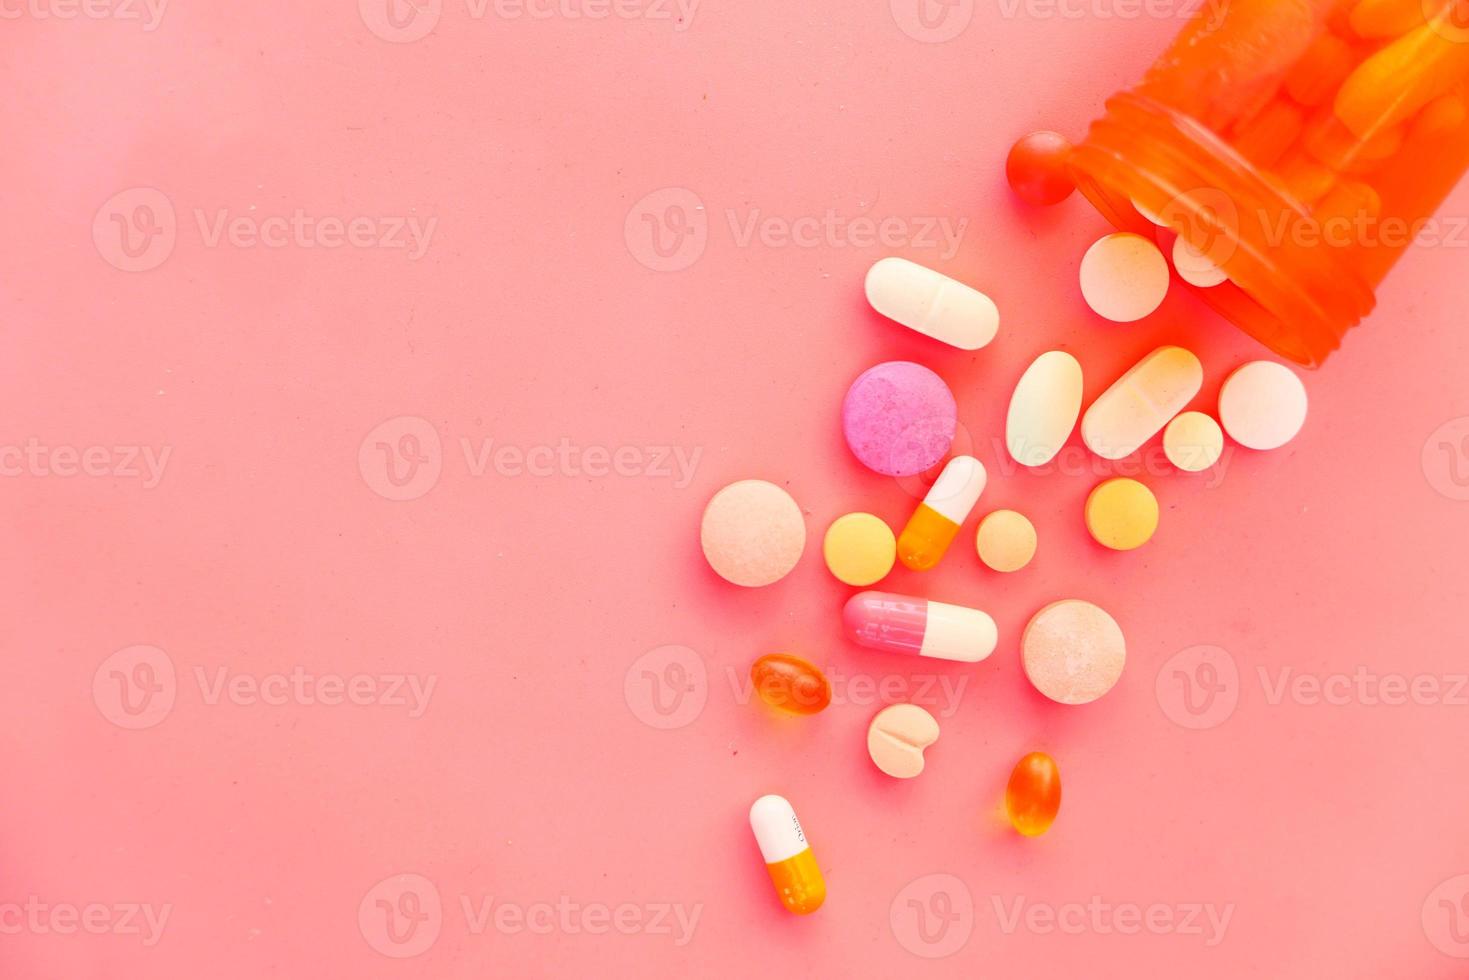 kleurrijke pillen die op roze achtergrond morsen foto